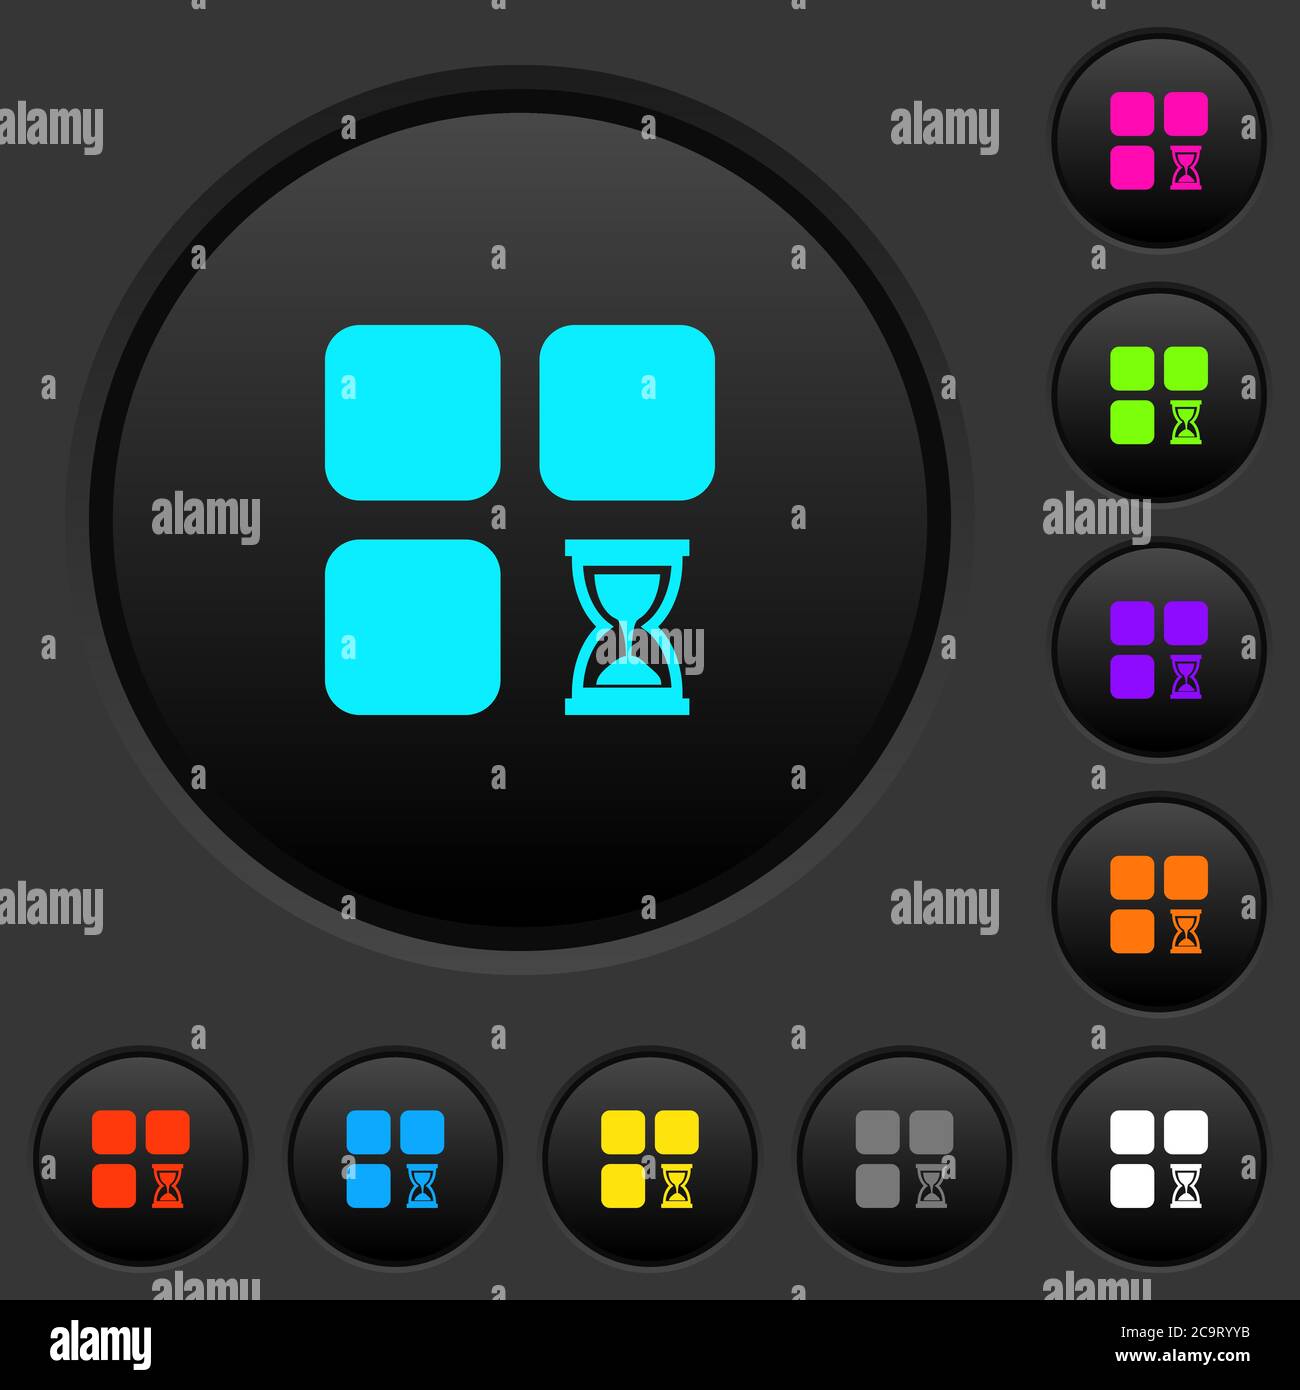 Componente esperando botones pulsadores oscuros con iconos de colores vivos sobre fondo gris oscuro Ilustración del Vector